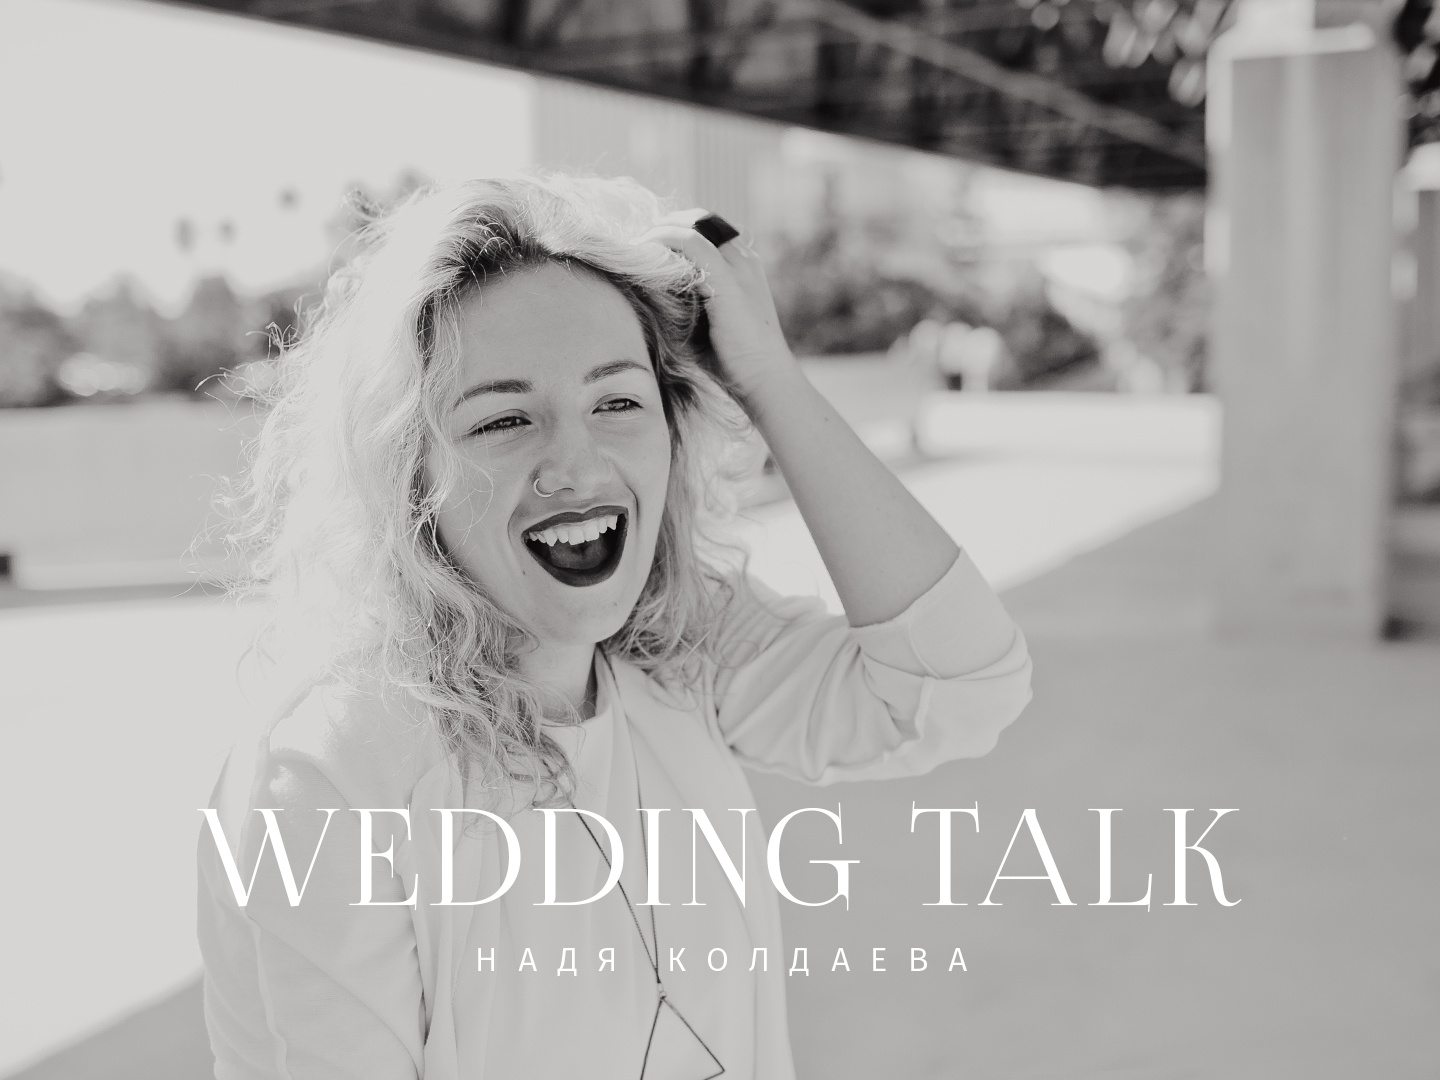 Wedding talk: фотограф Надя Колдаева